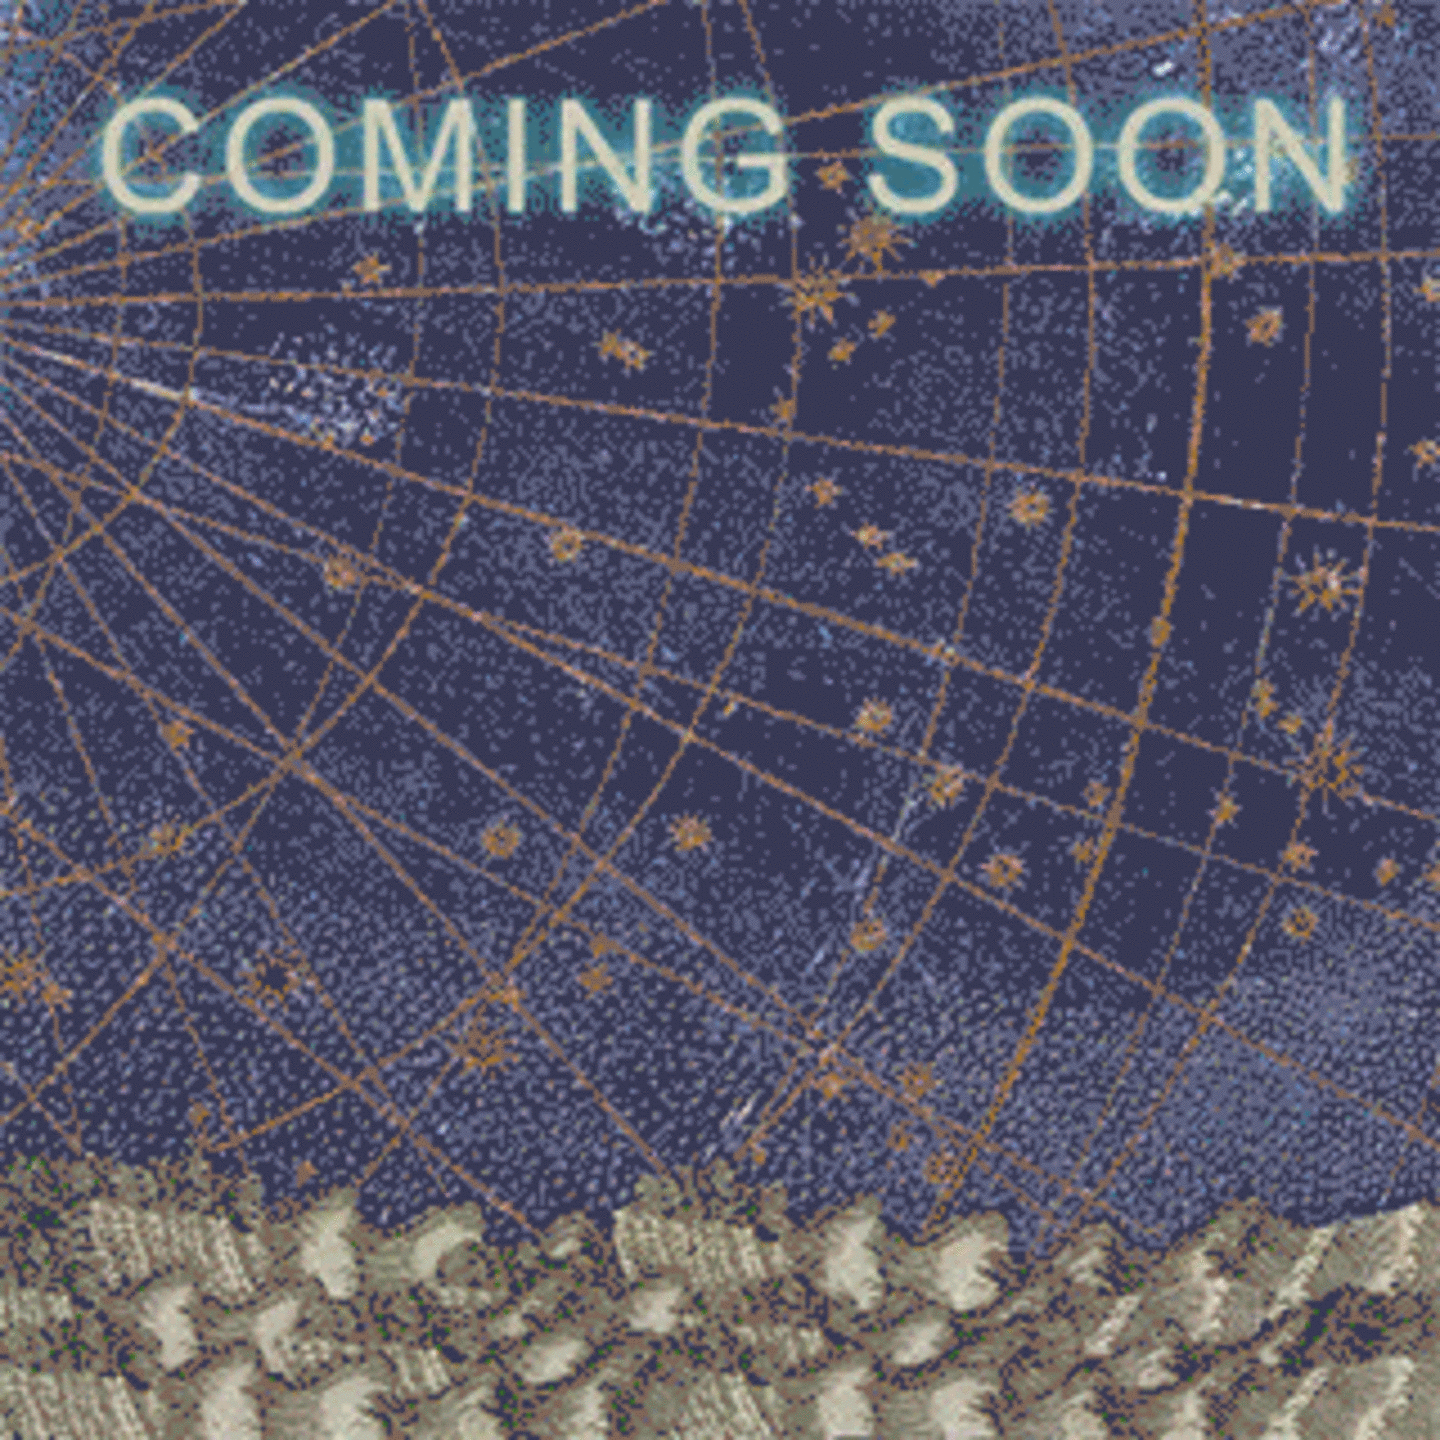 Ein Flyer mit der Aufschrift: "Coming Soon - Wegweiser oder die Macht der Mehrdeutigkeit" mit einem Sternenhimmel als Hintergrund. Der Flyer ist für eine Ausstellung in der Kunst-Station Sankt Peter Köln.